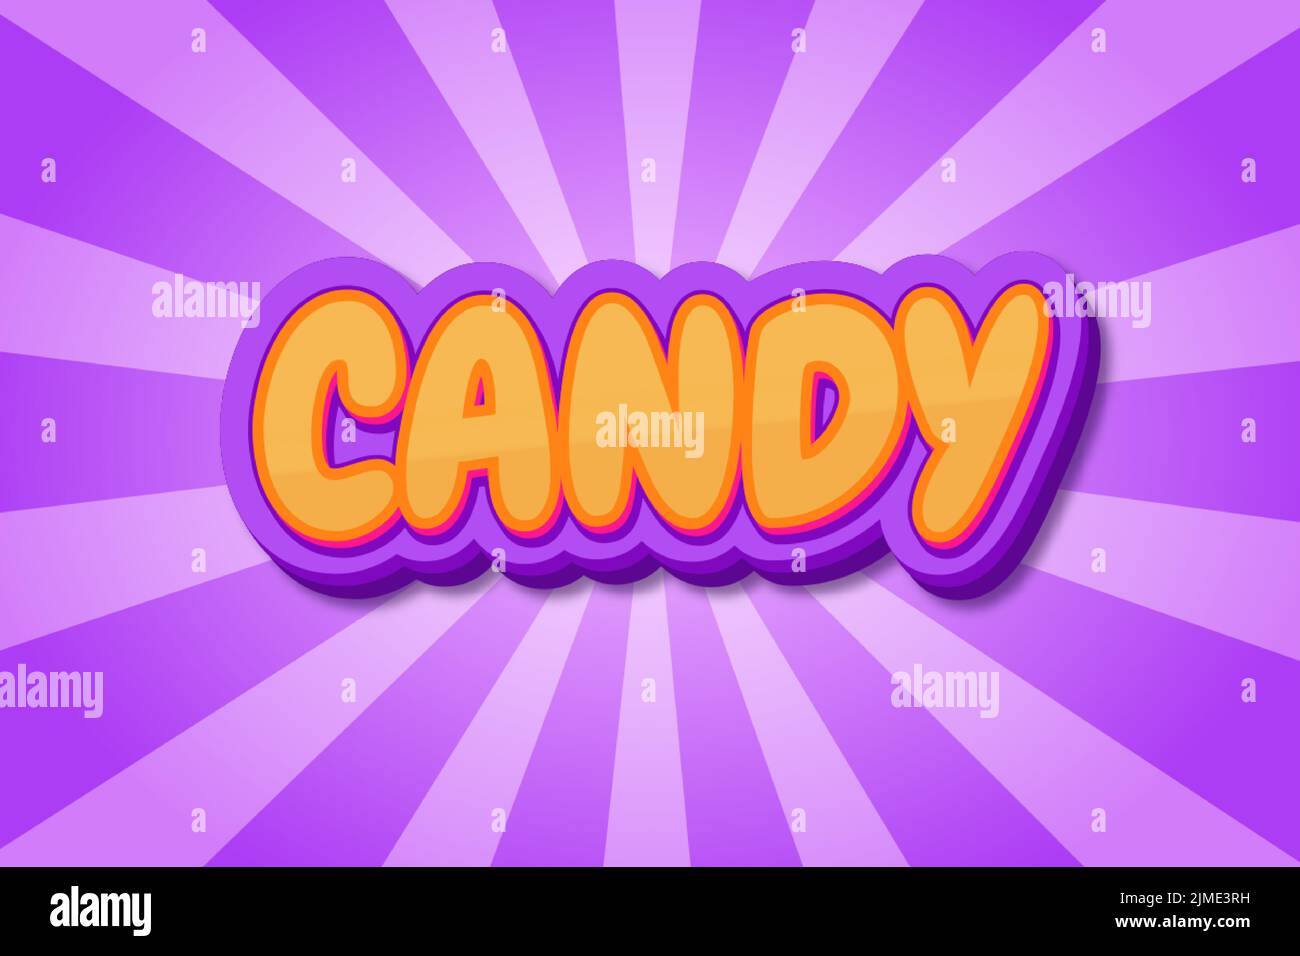 Editierbare Texteffekte Candy , Wörter und Schriftart können geändert werden Stock Vektor